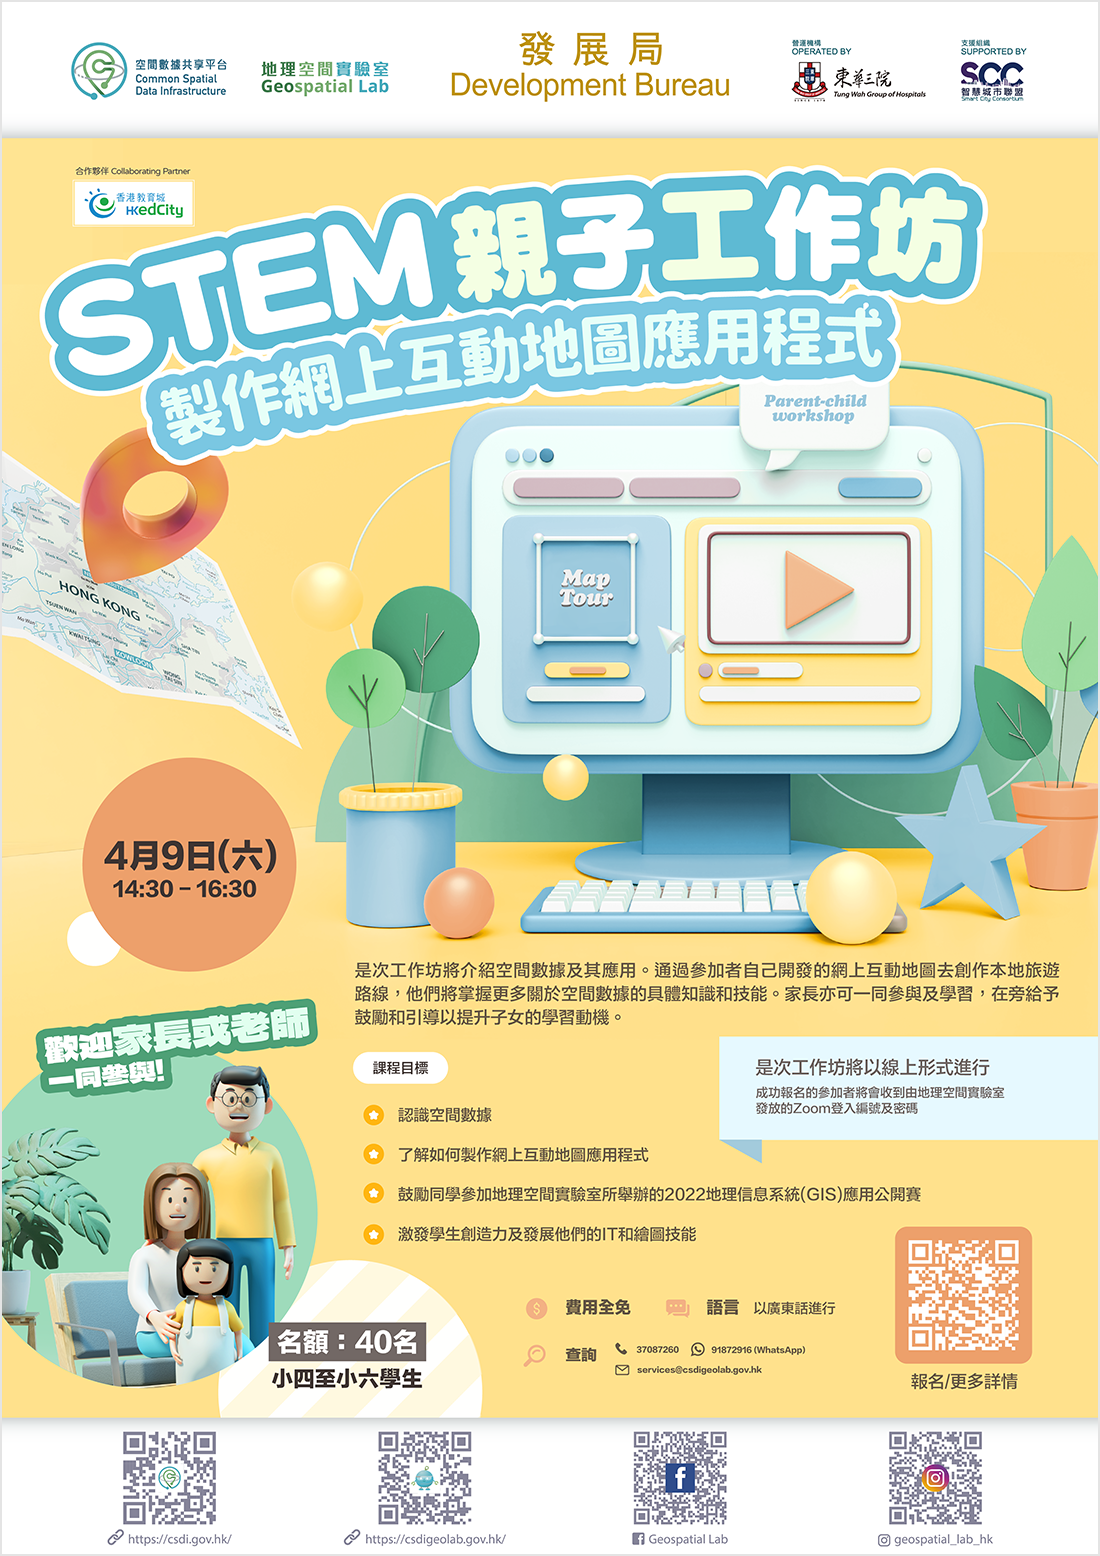 STEM親子工作坊 「製作網上互動地圖應用程式」海報